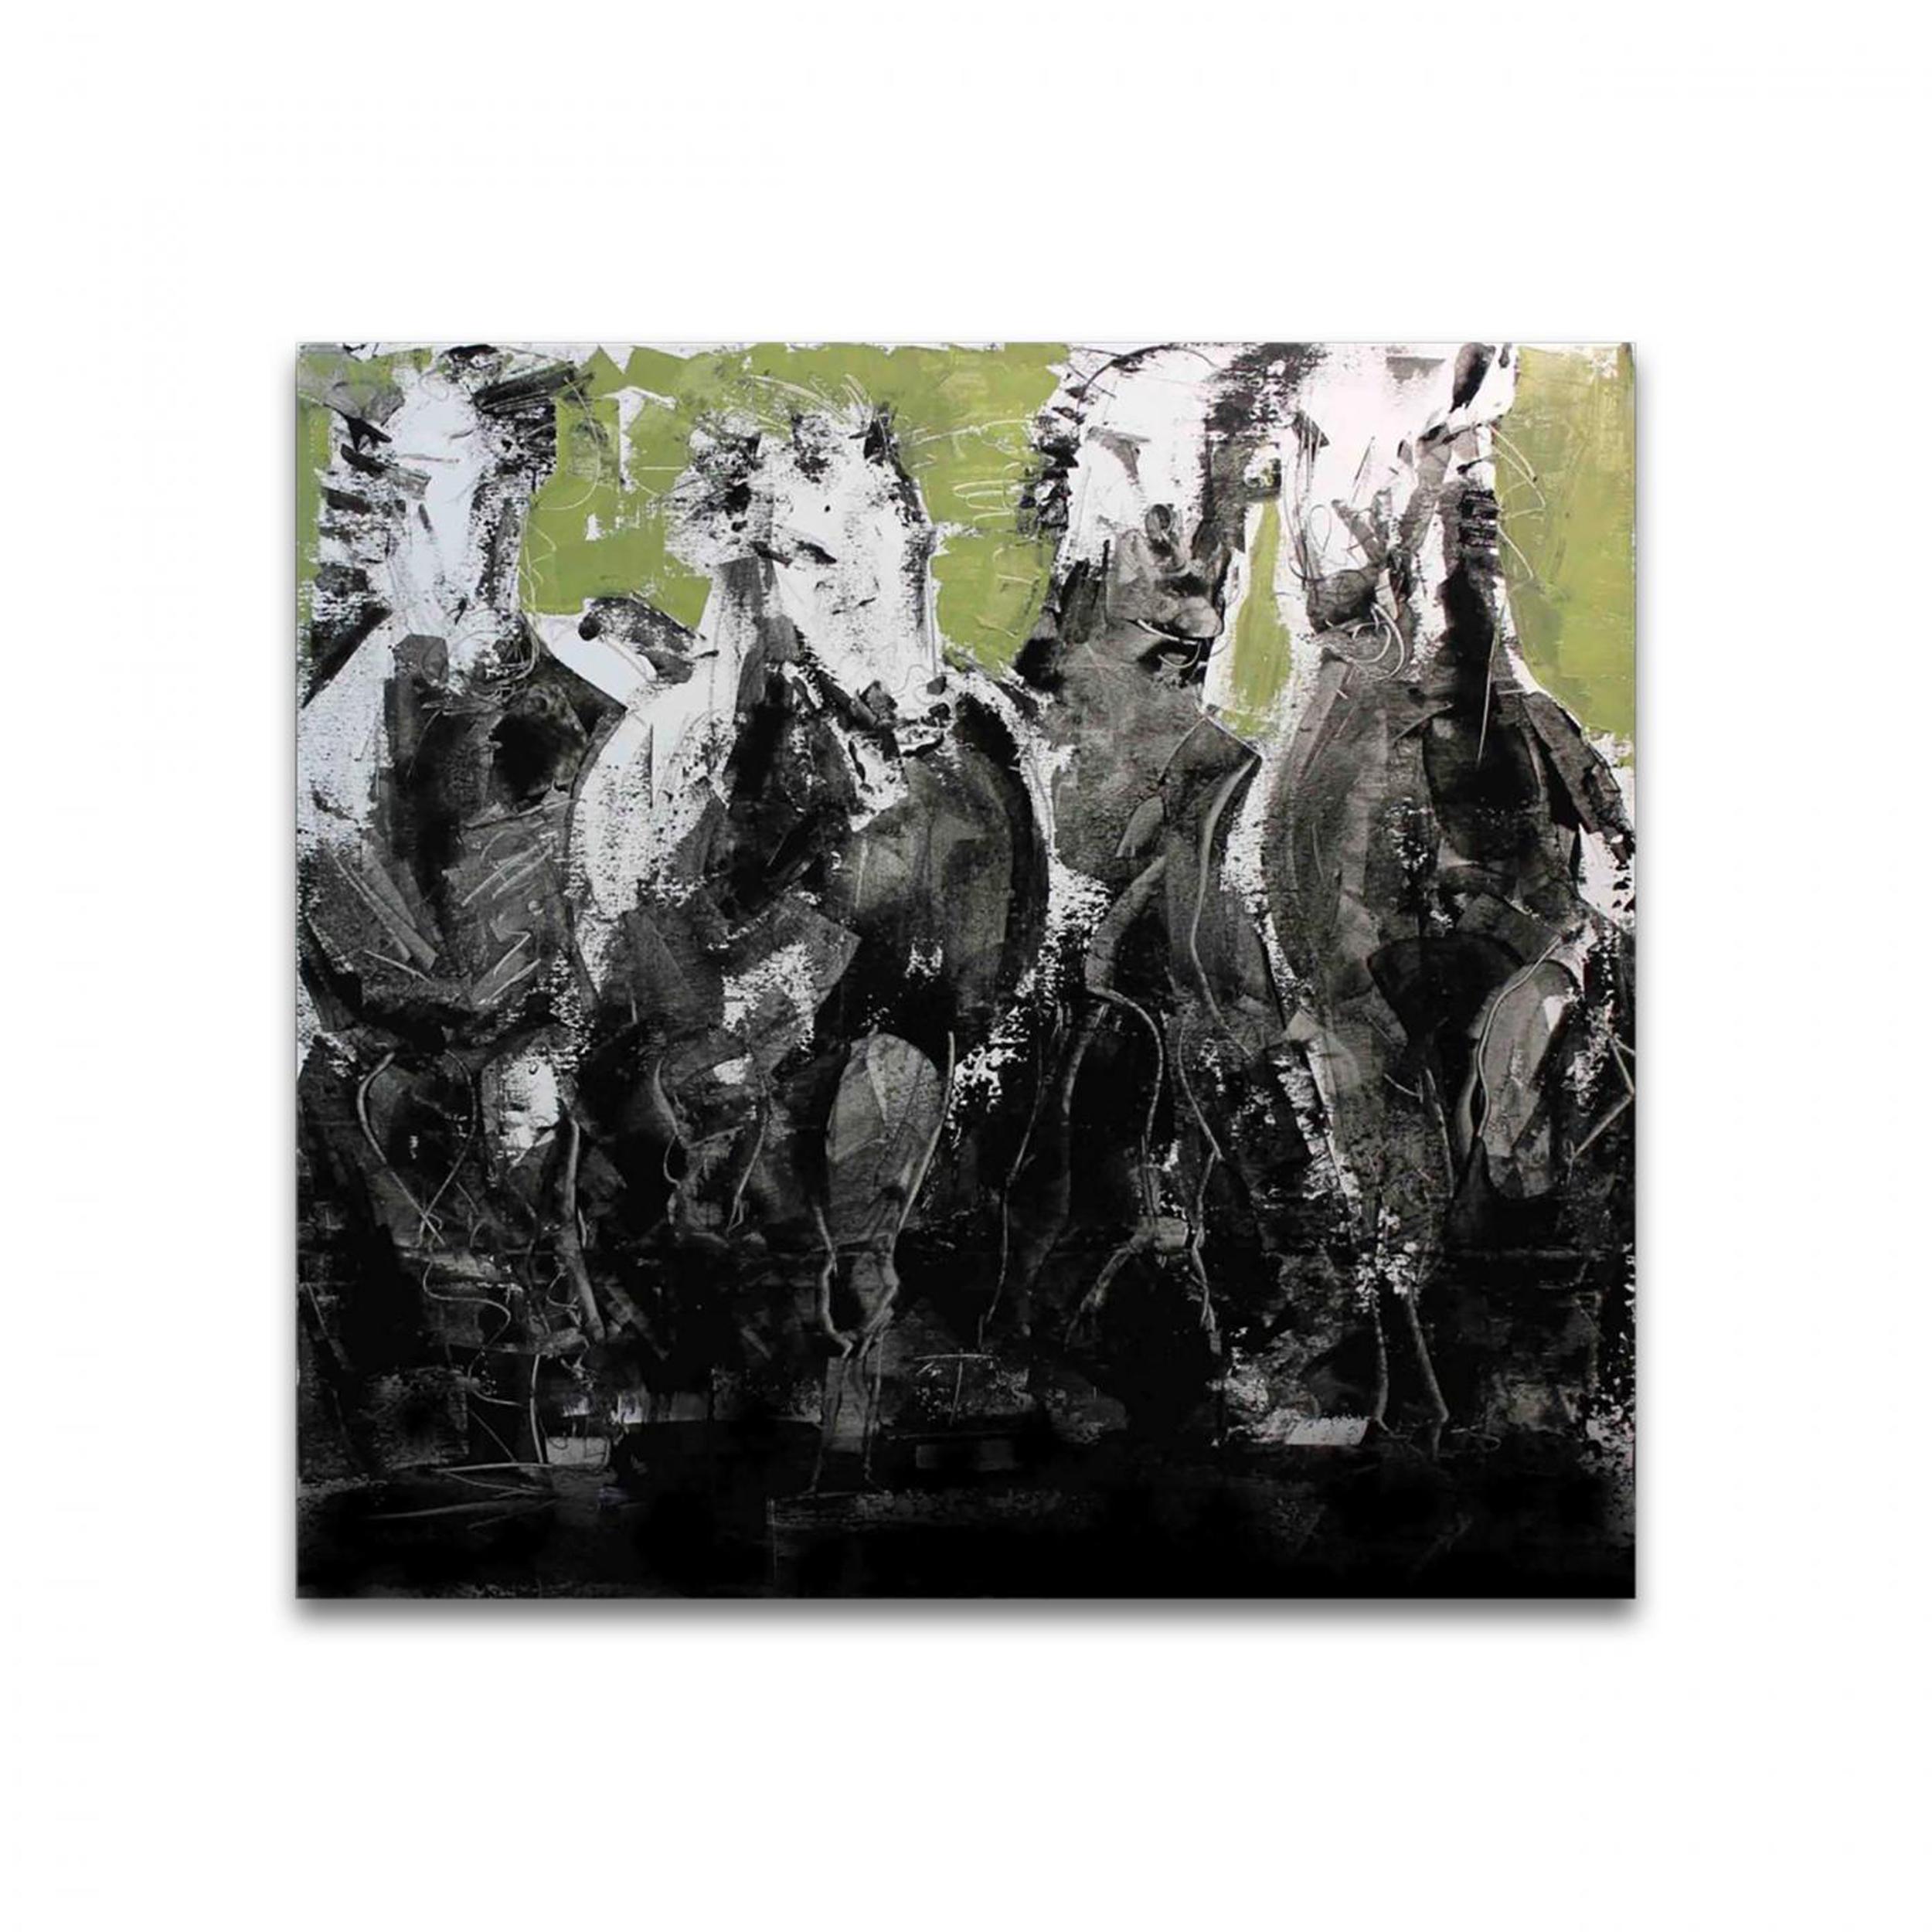 HORSES - Mixed Media Art by Fabio Modica